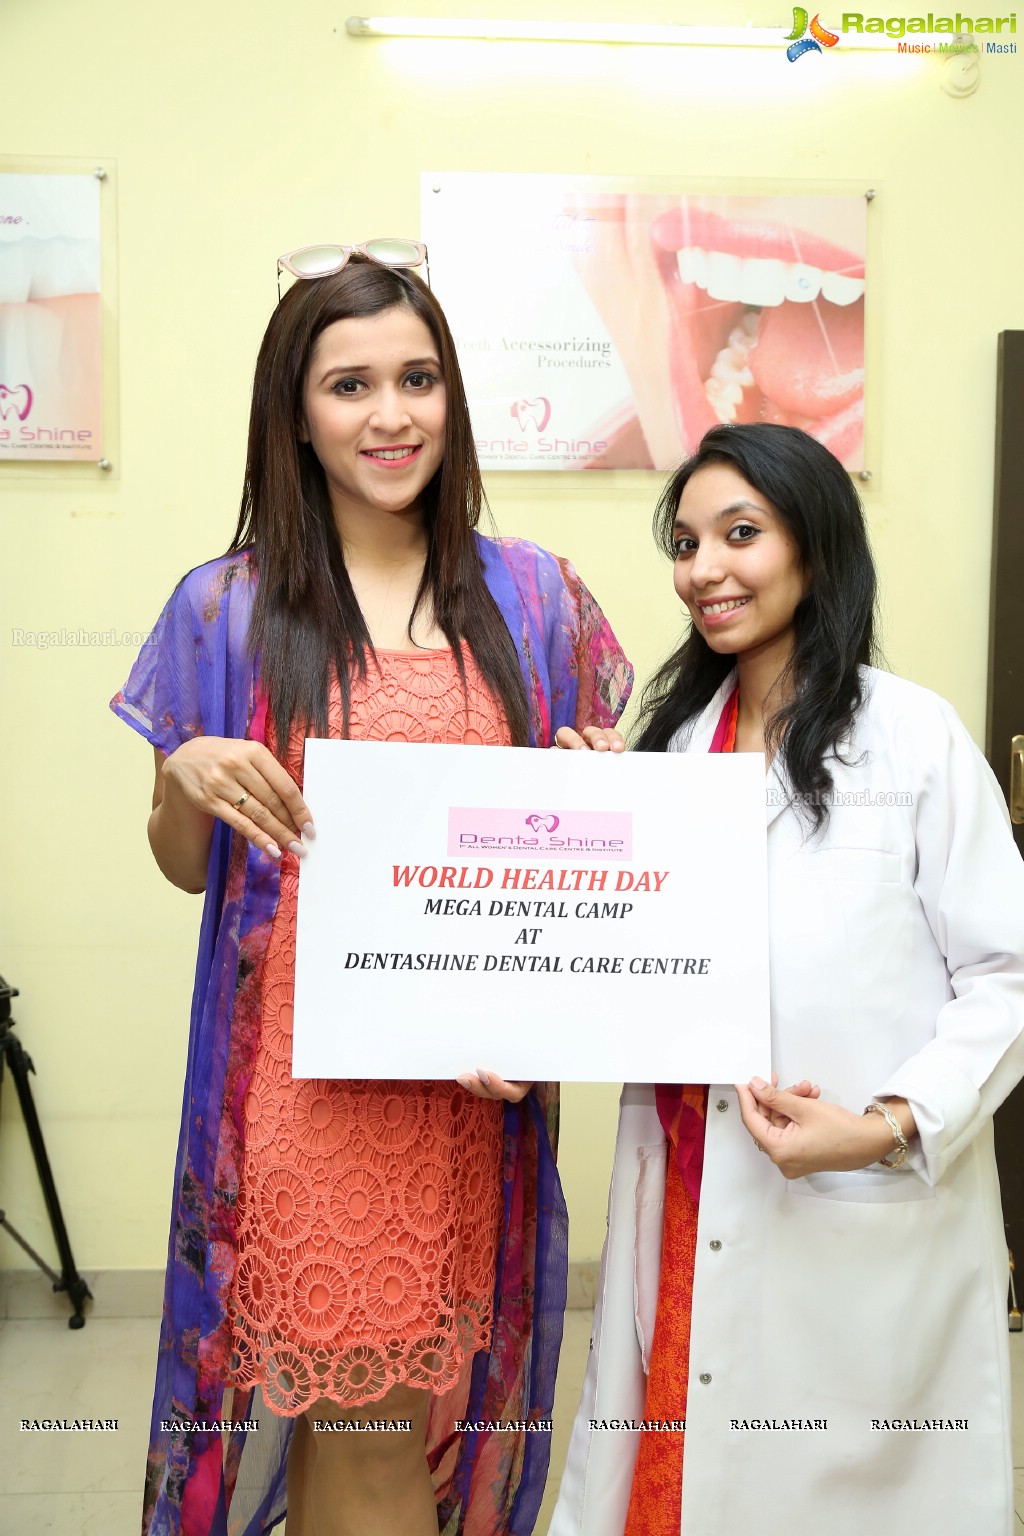 Mannara Chopra at Dentashine Dental Care Centre World Health Day Mega Dental Camp